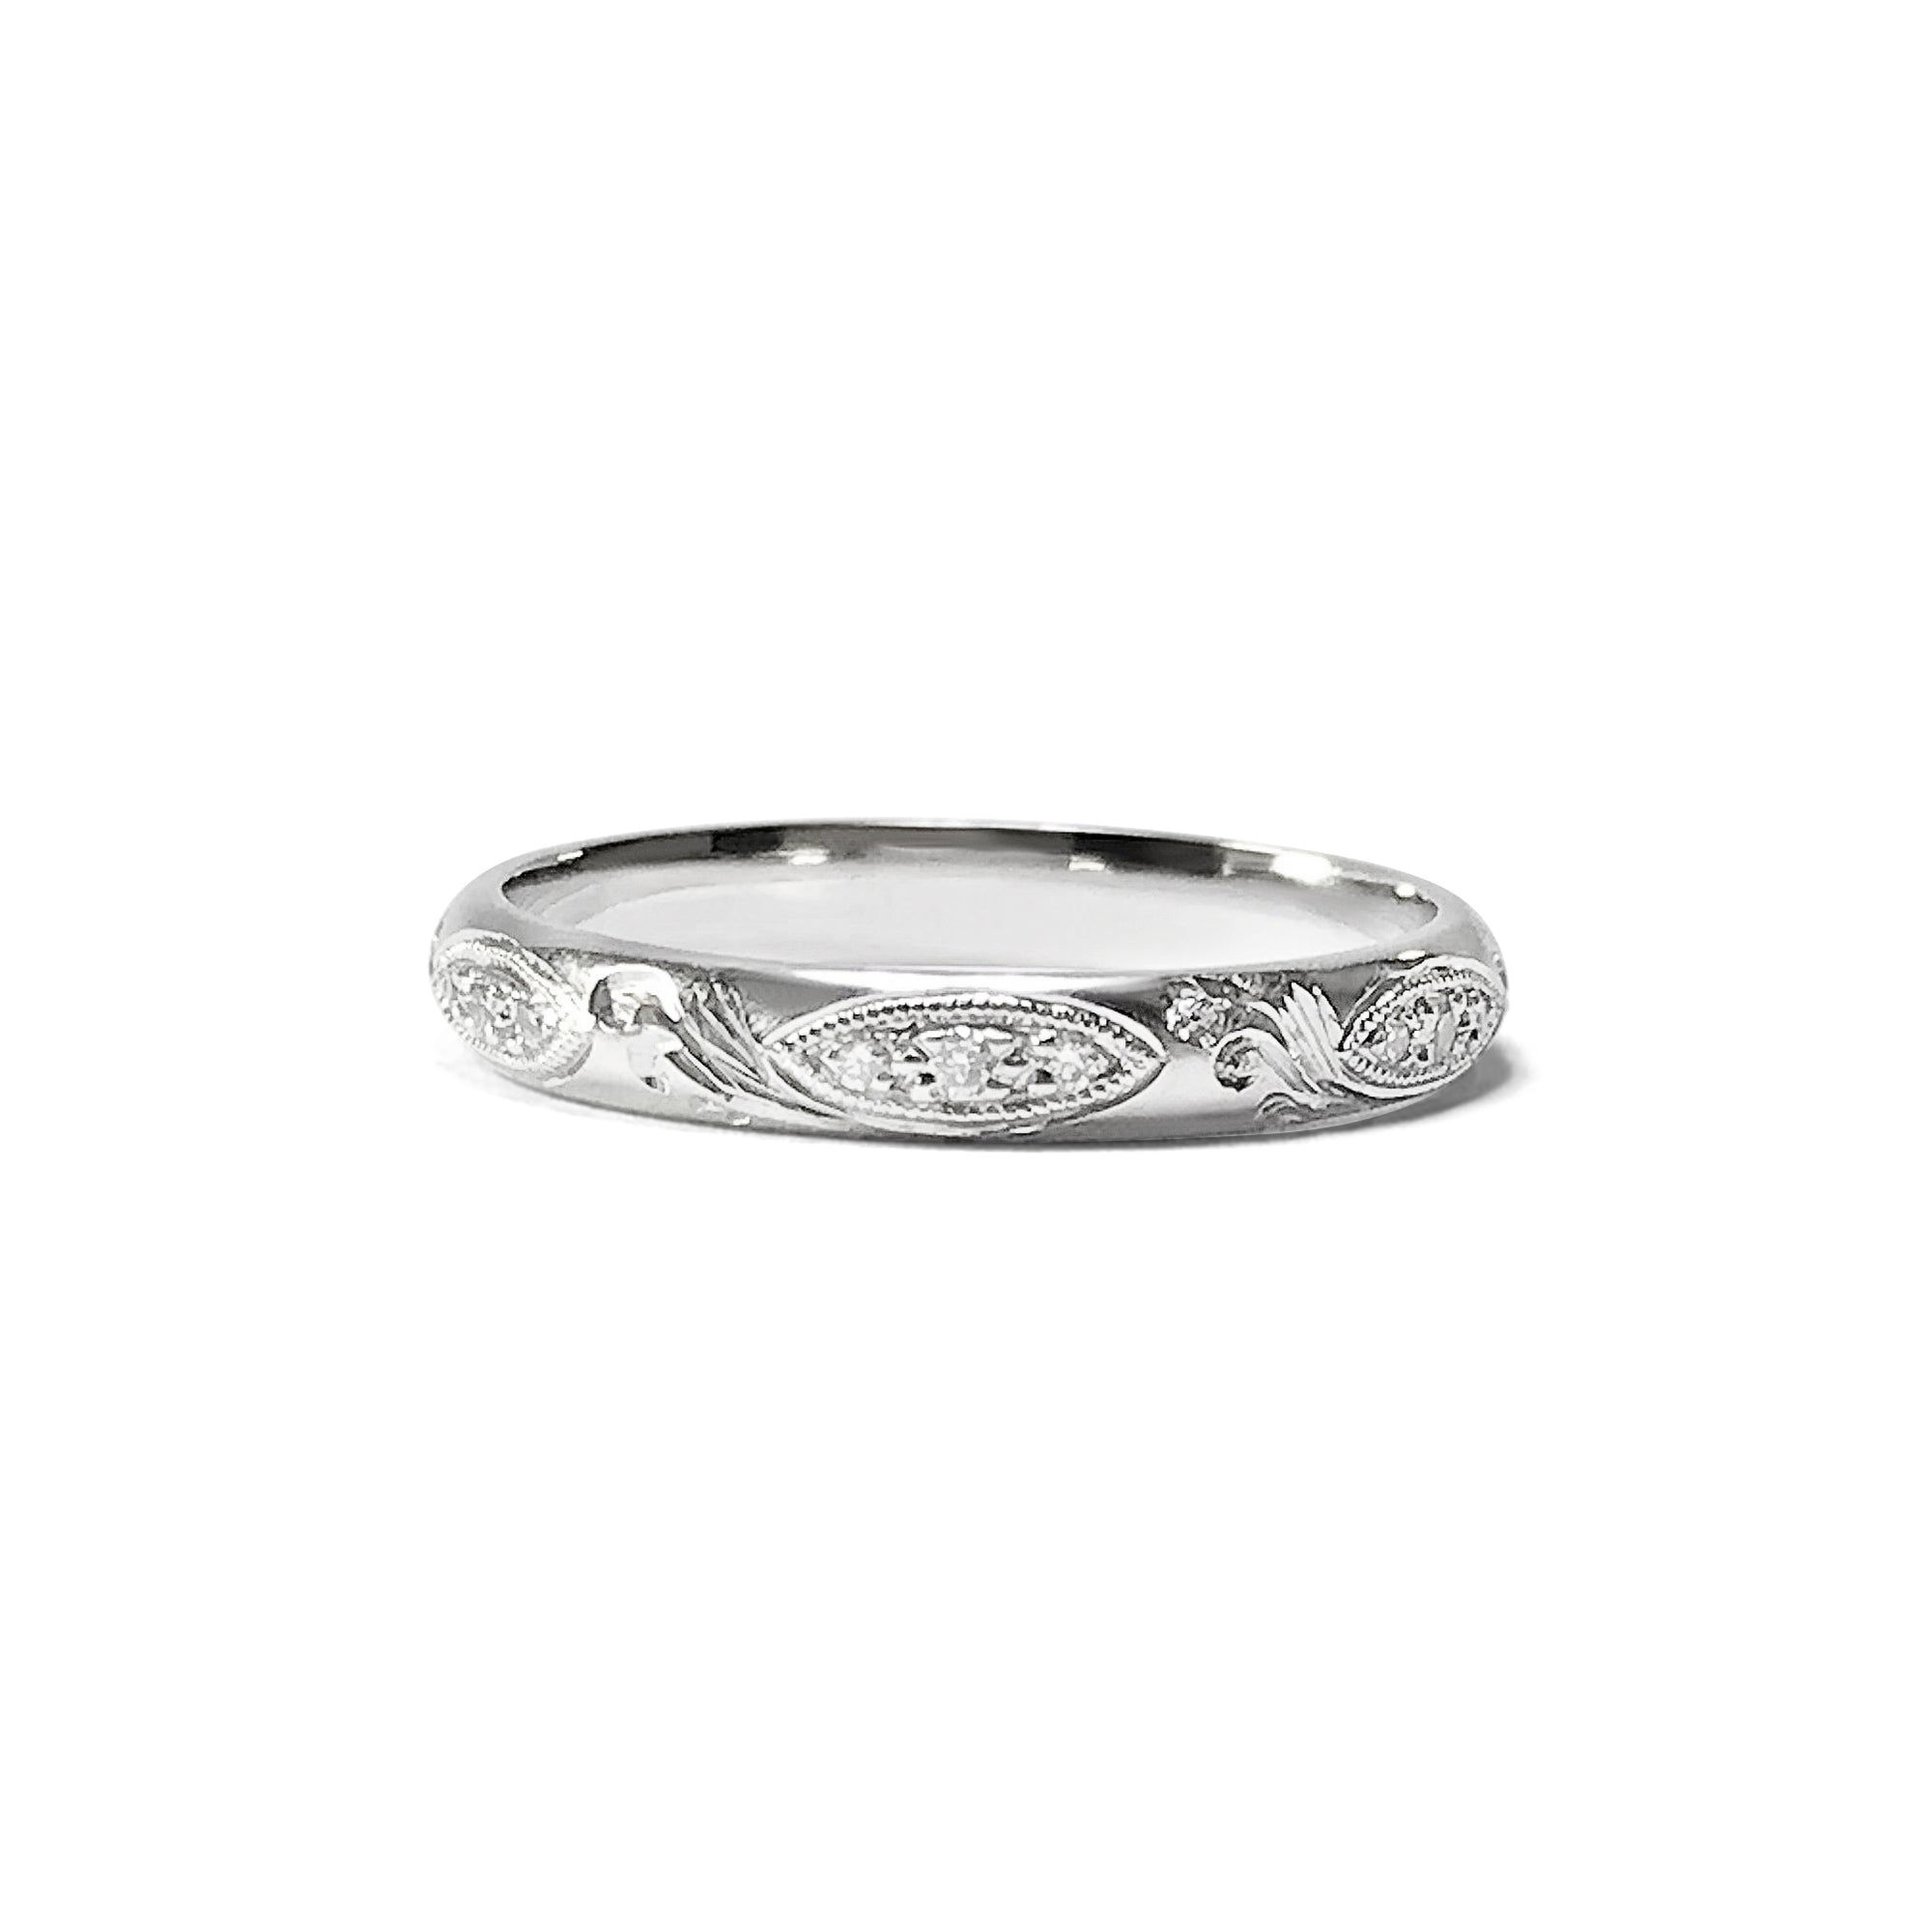 Bespoke Alastair Engraved Wedding Ring